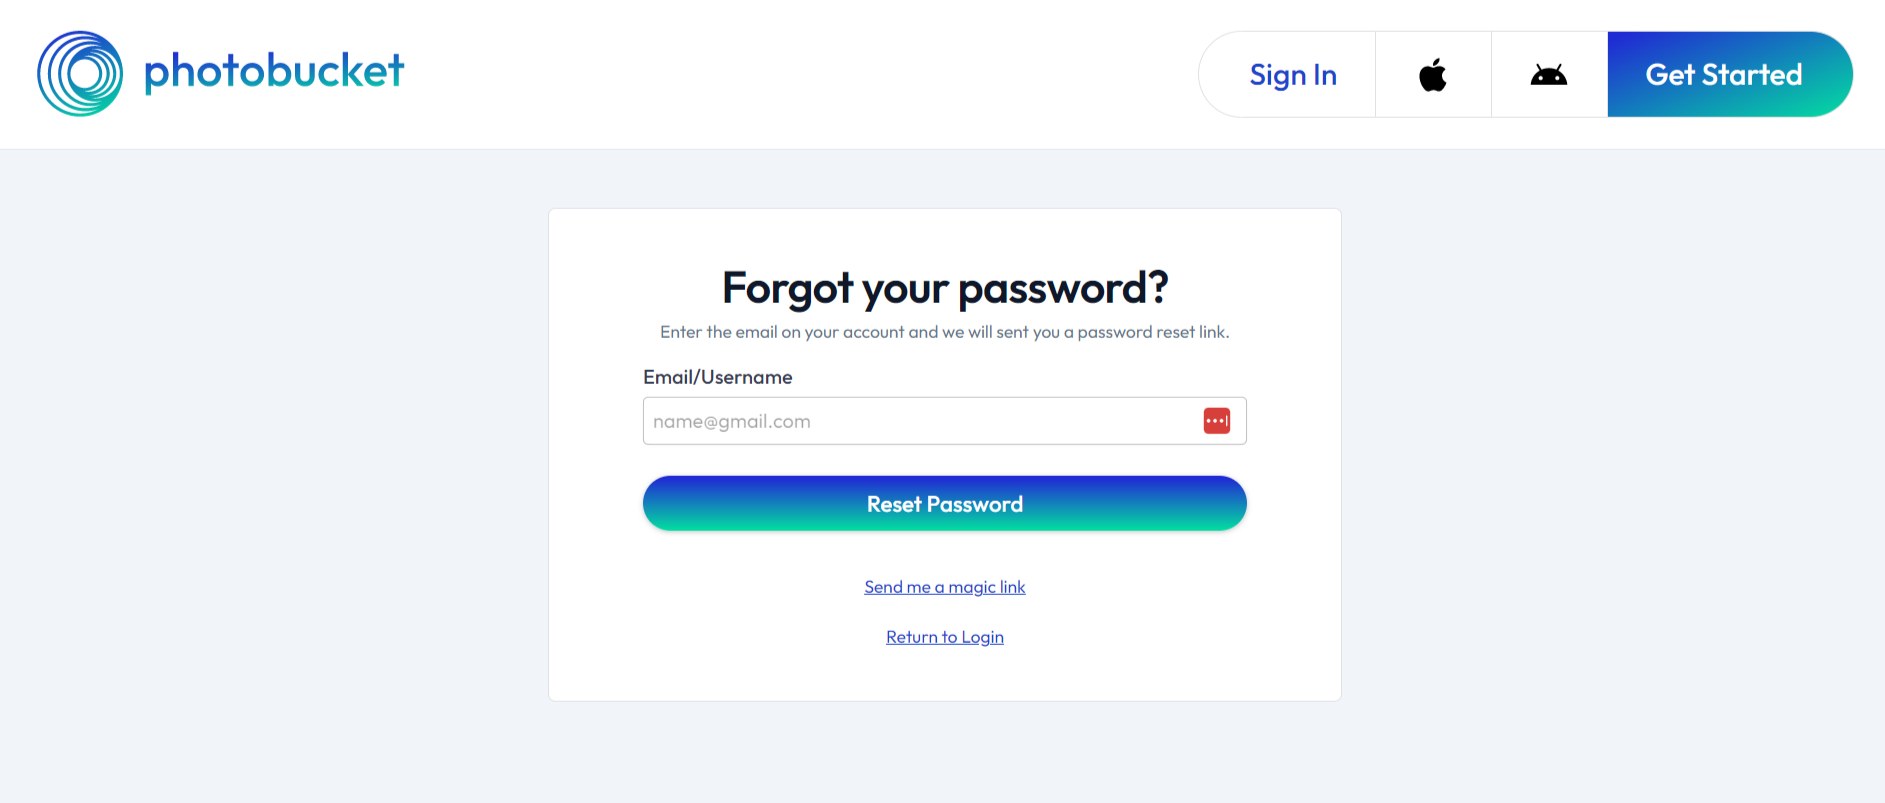 Password Reset – Photobucket Support